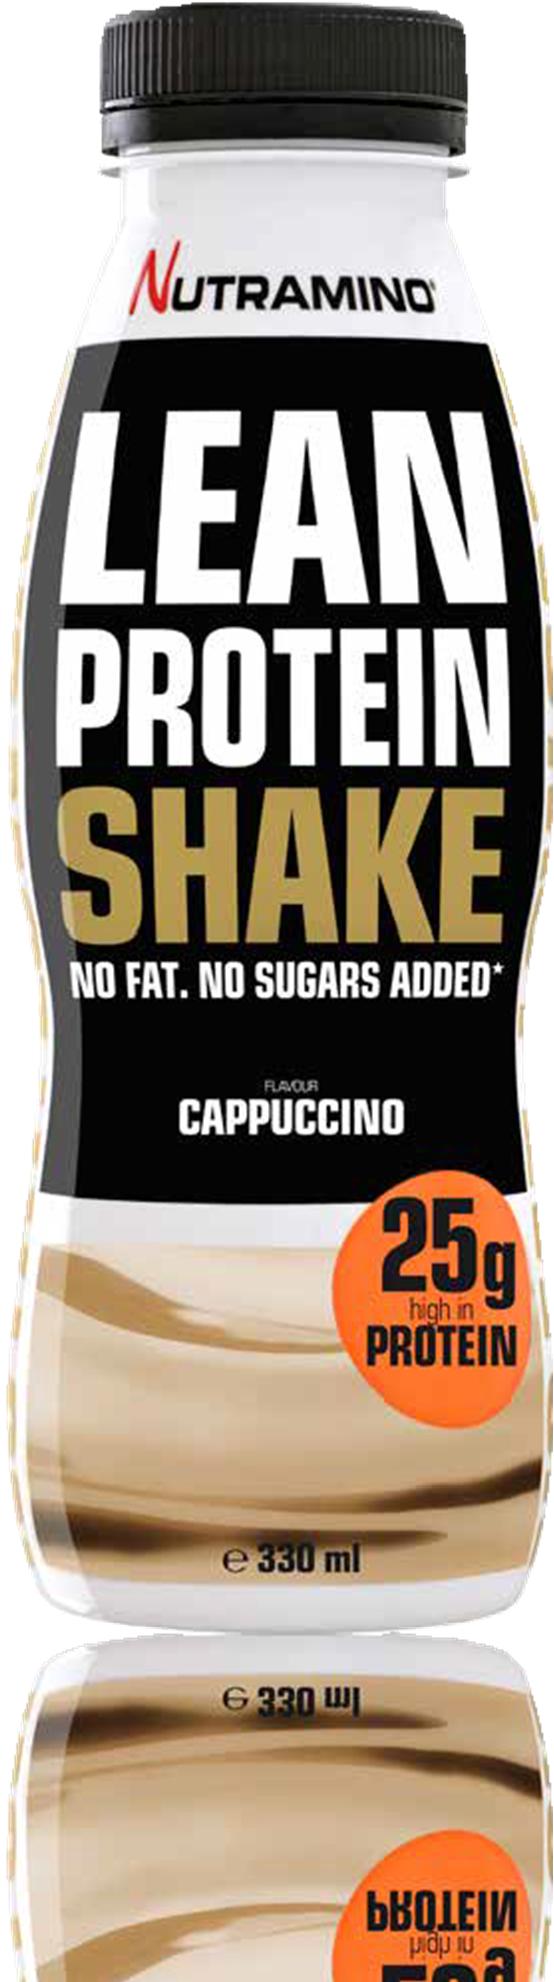 LEAN PROTEIN SHAKE CAPPUCCINO 330 ml Nutramino Lean Protein Shake on maailman herkullisin dieettishake. Se sisältää 25 g proteiinia, joka auttaa tukemaan lihasten palautumista.